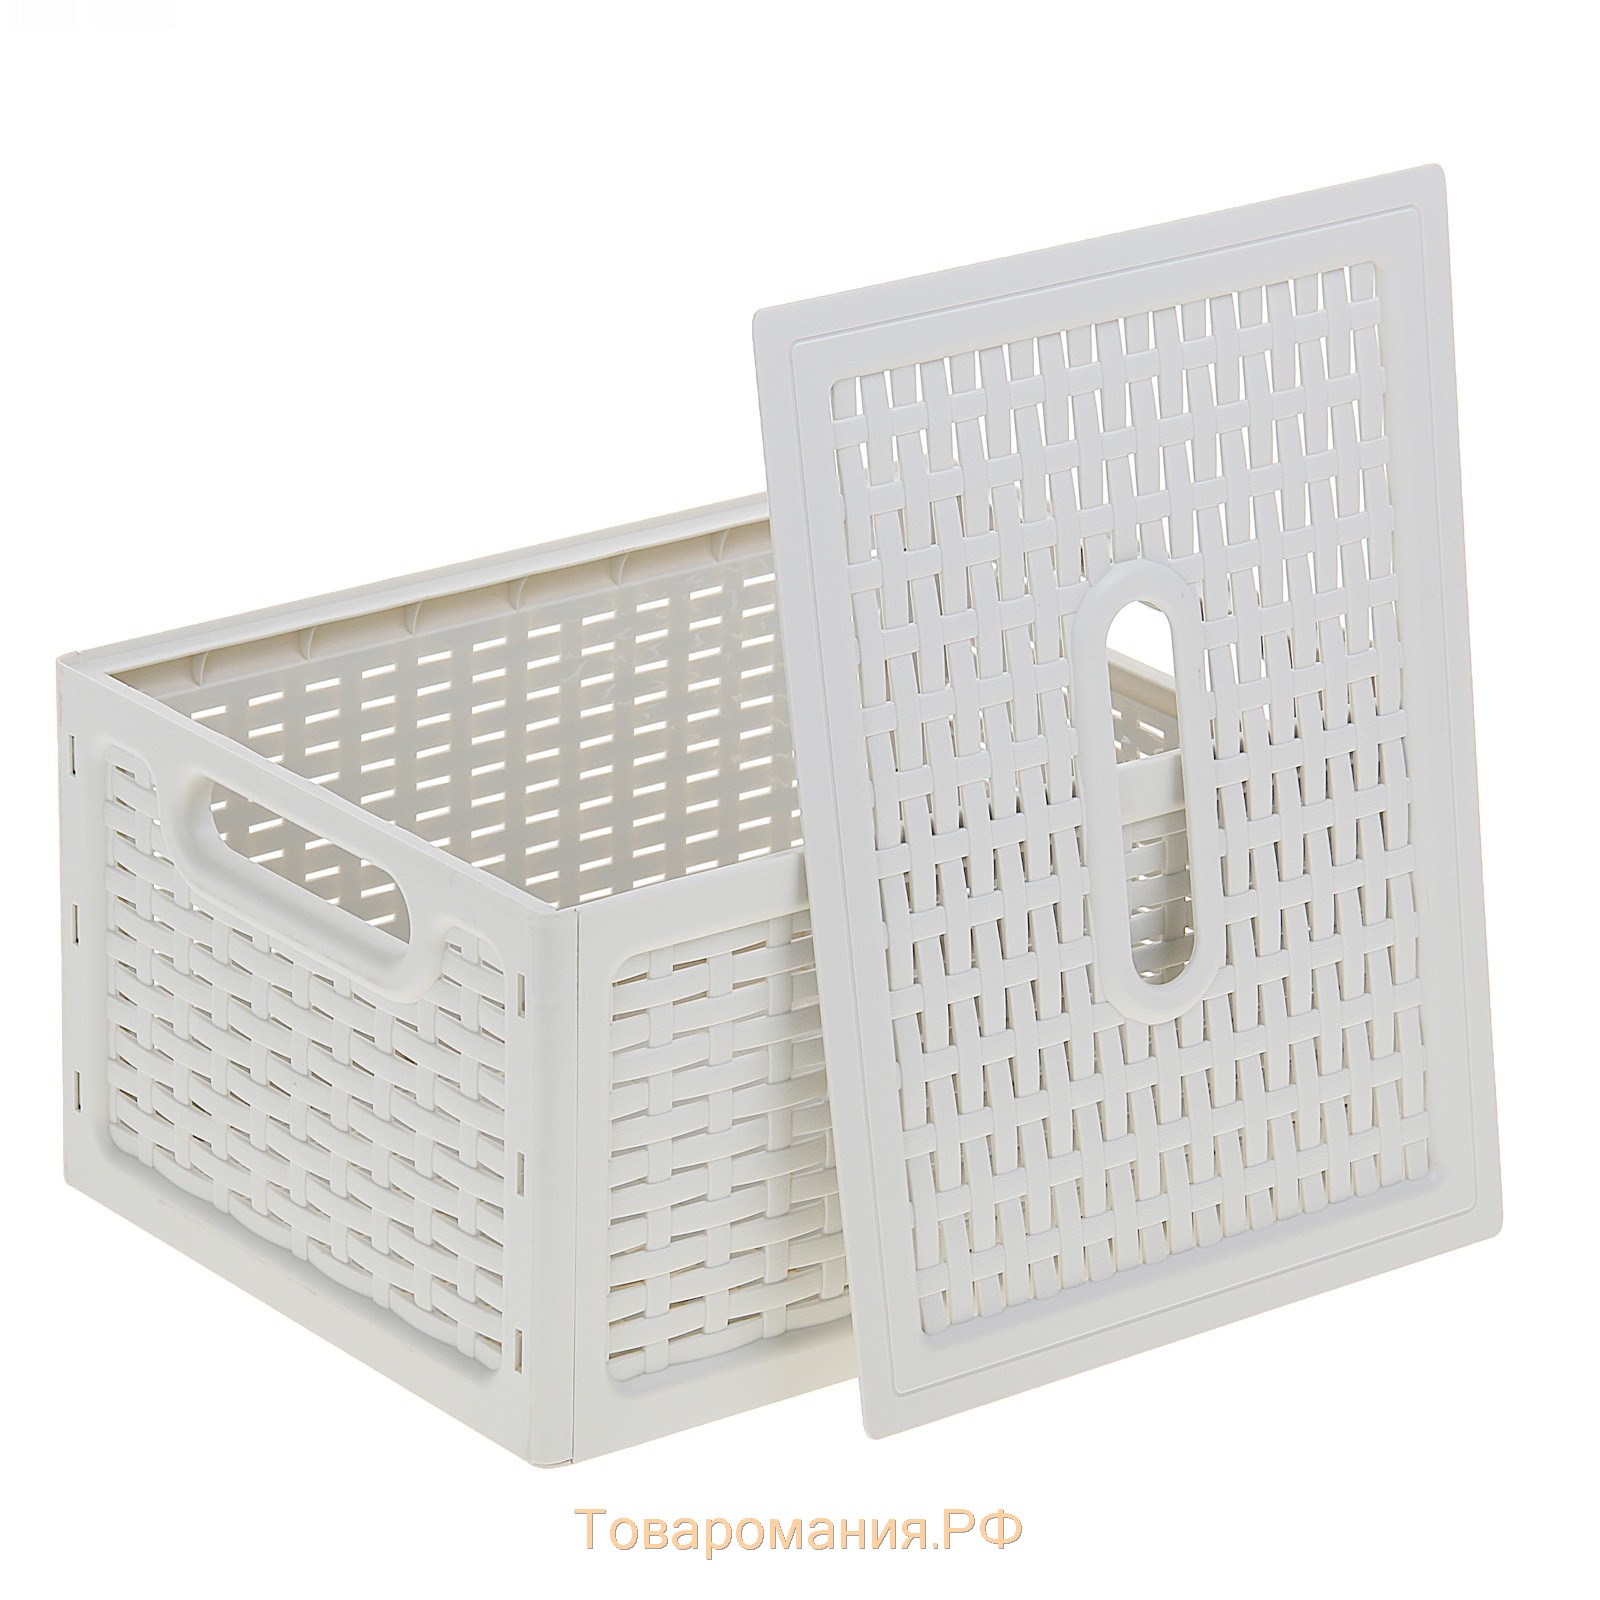 Ящик для хранения с крышкой «Ротанг», 13 л, 37×28×19 см, цвет белый